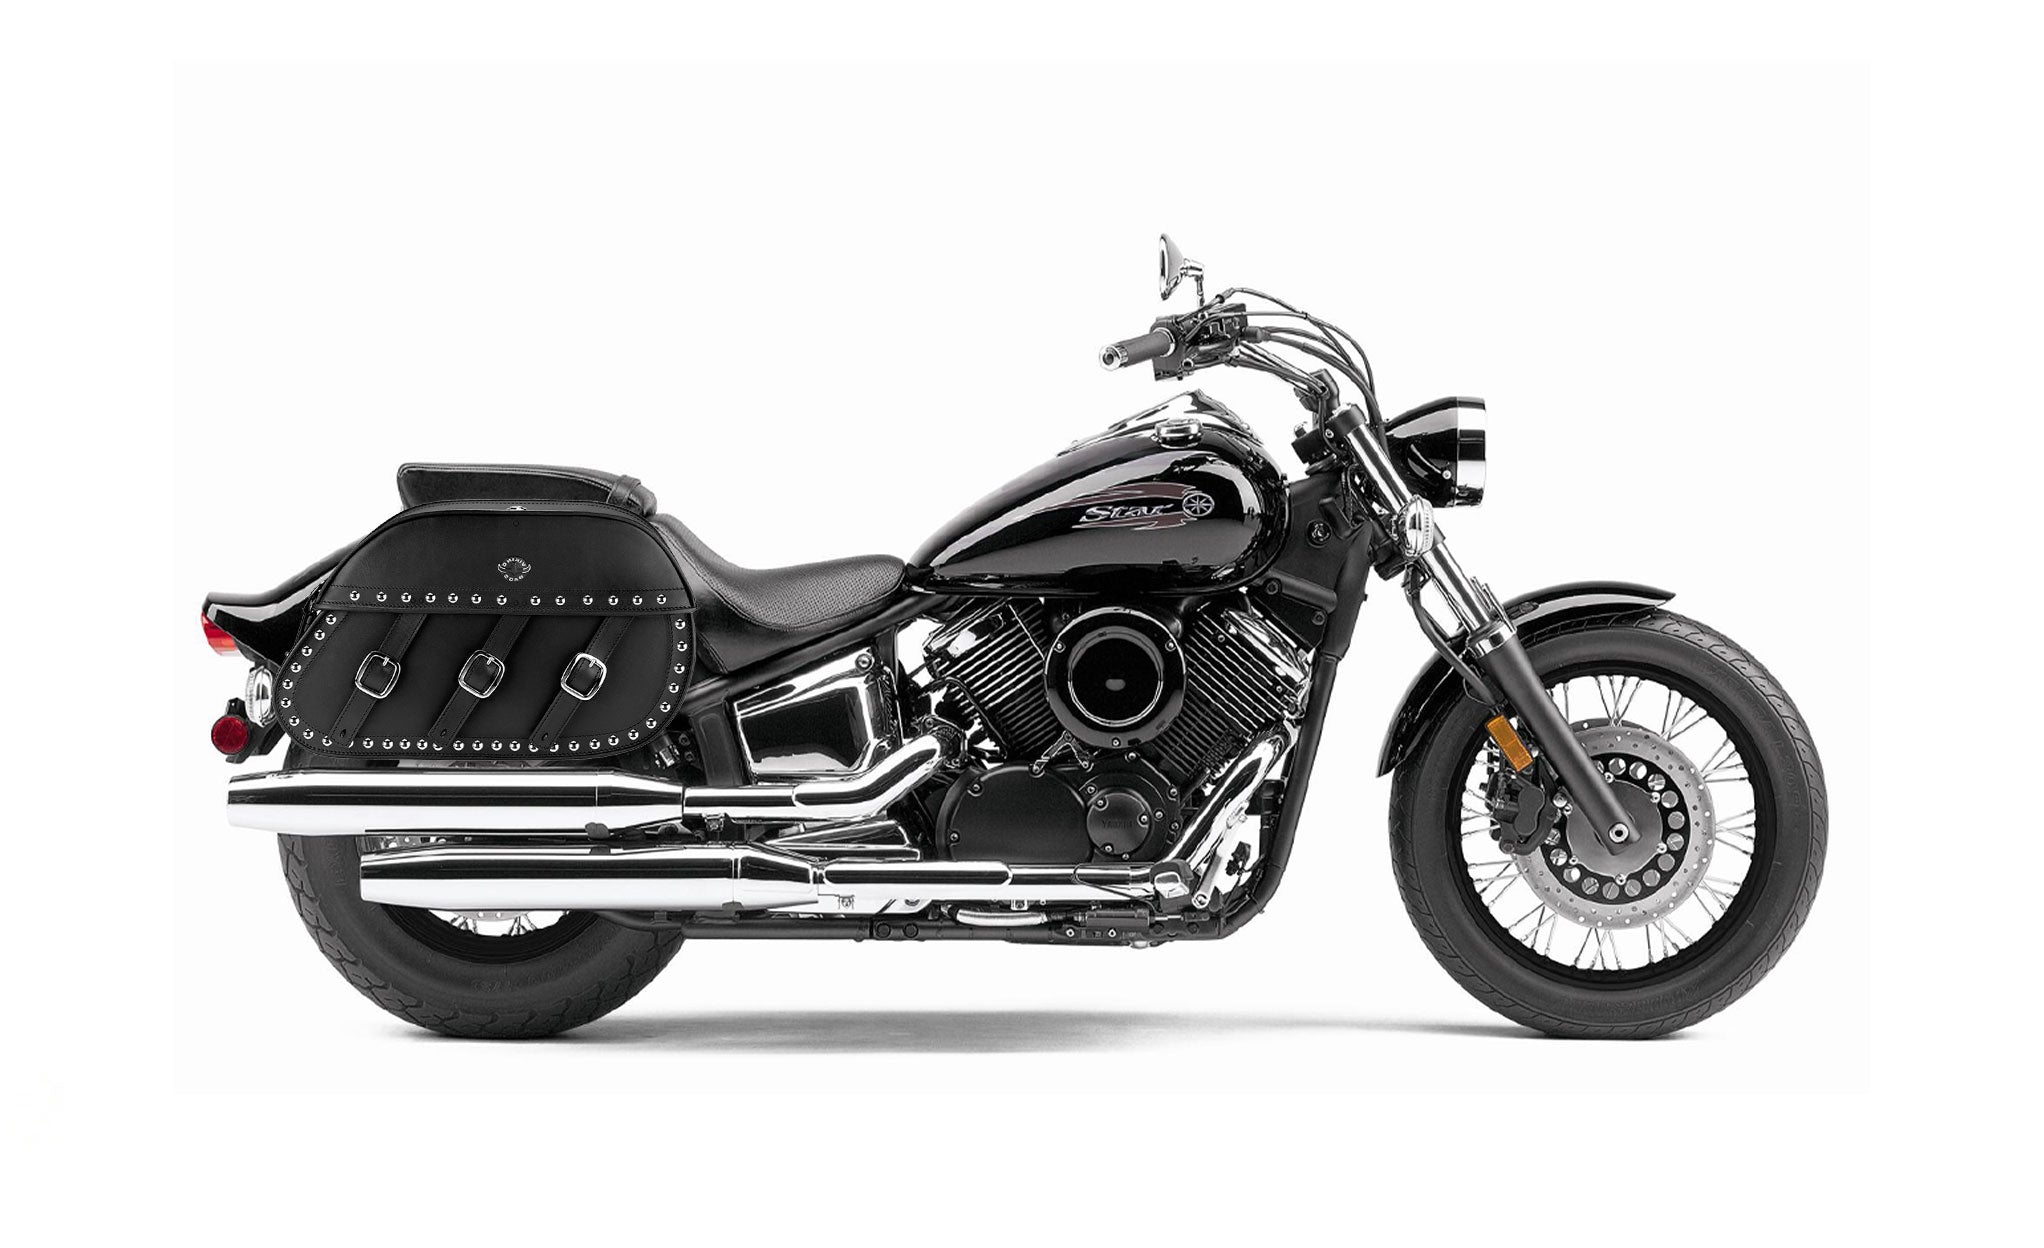 34L - Trianon Extra Large Yamaha V Star 1100 Custom XVS11T Studded Leather Motorcycle Saddlebags on Bike Photo @expand